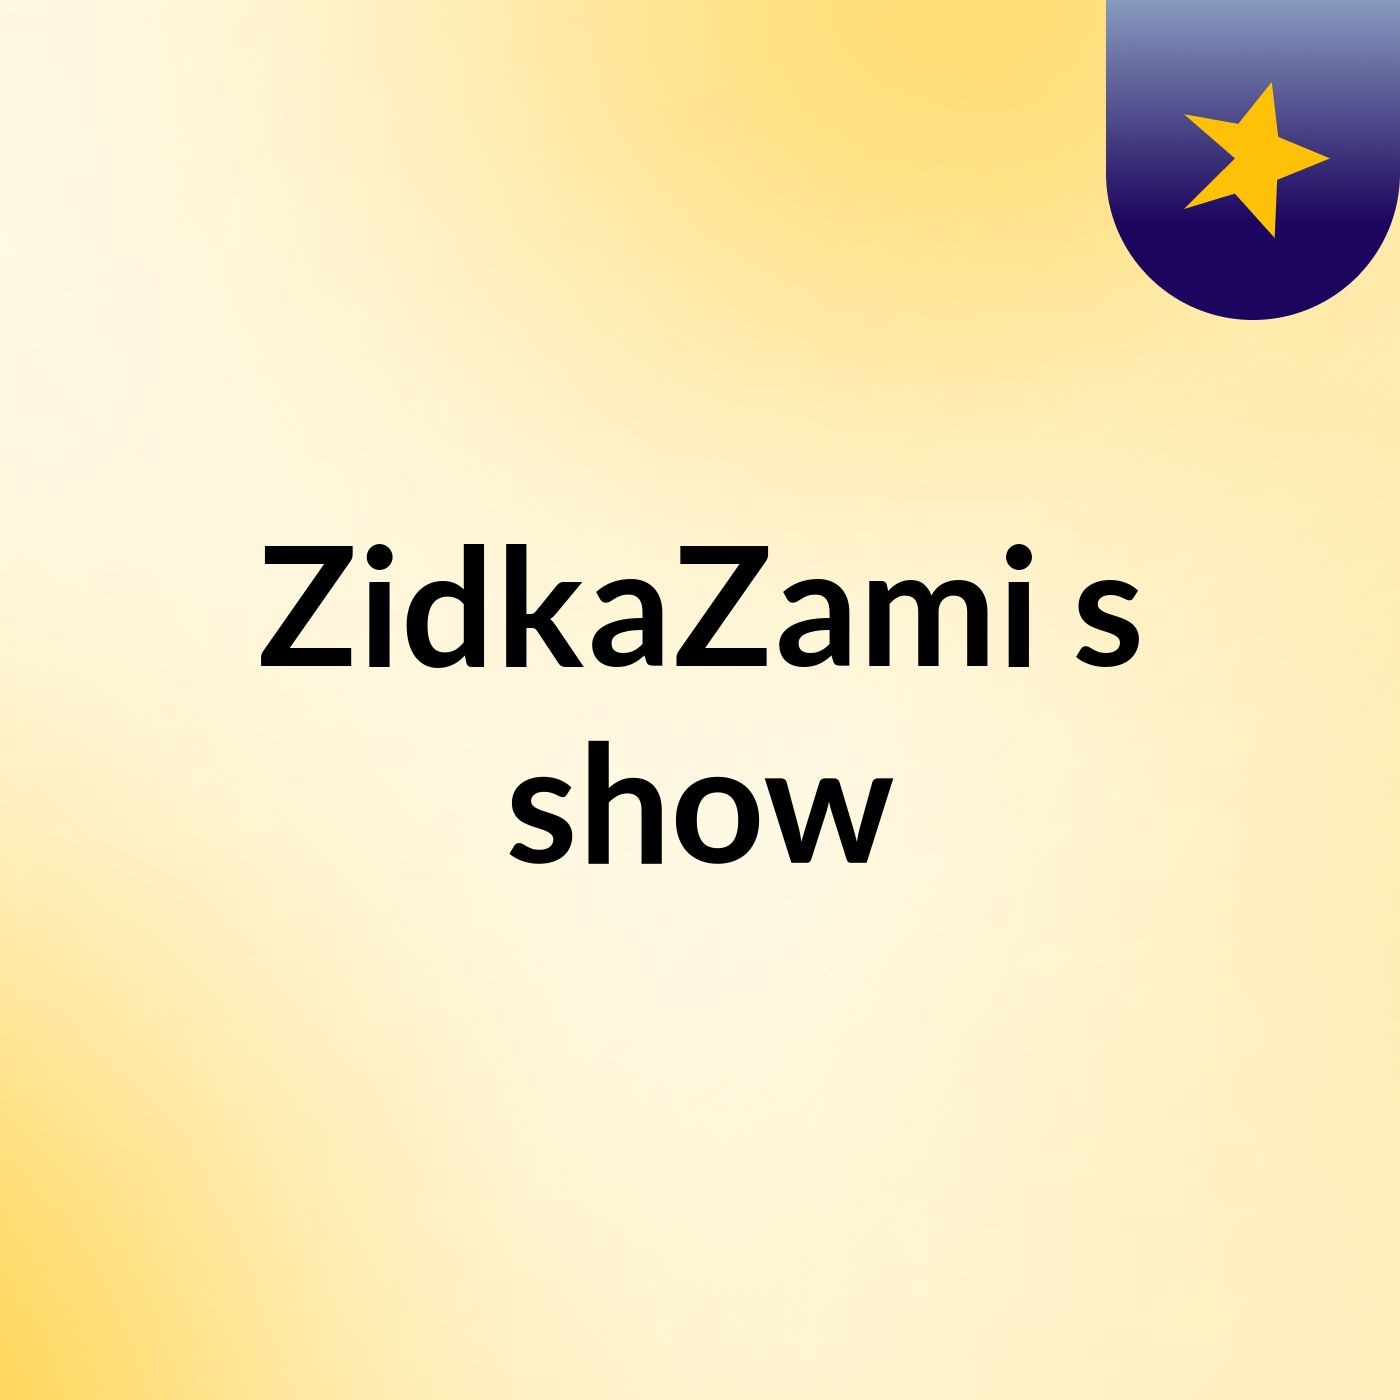 ZidkaZami's show